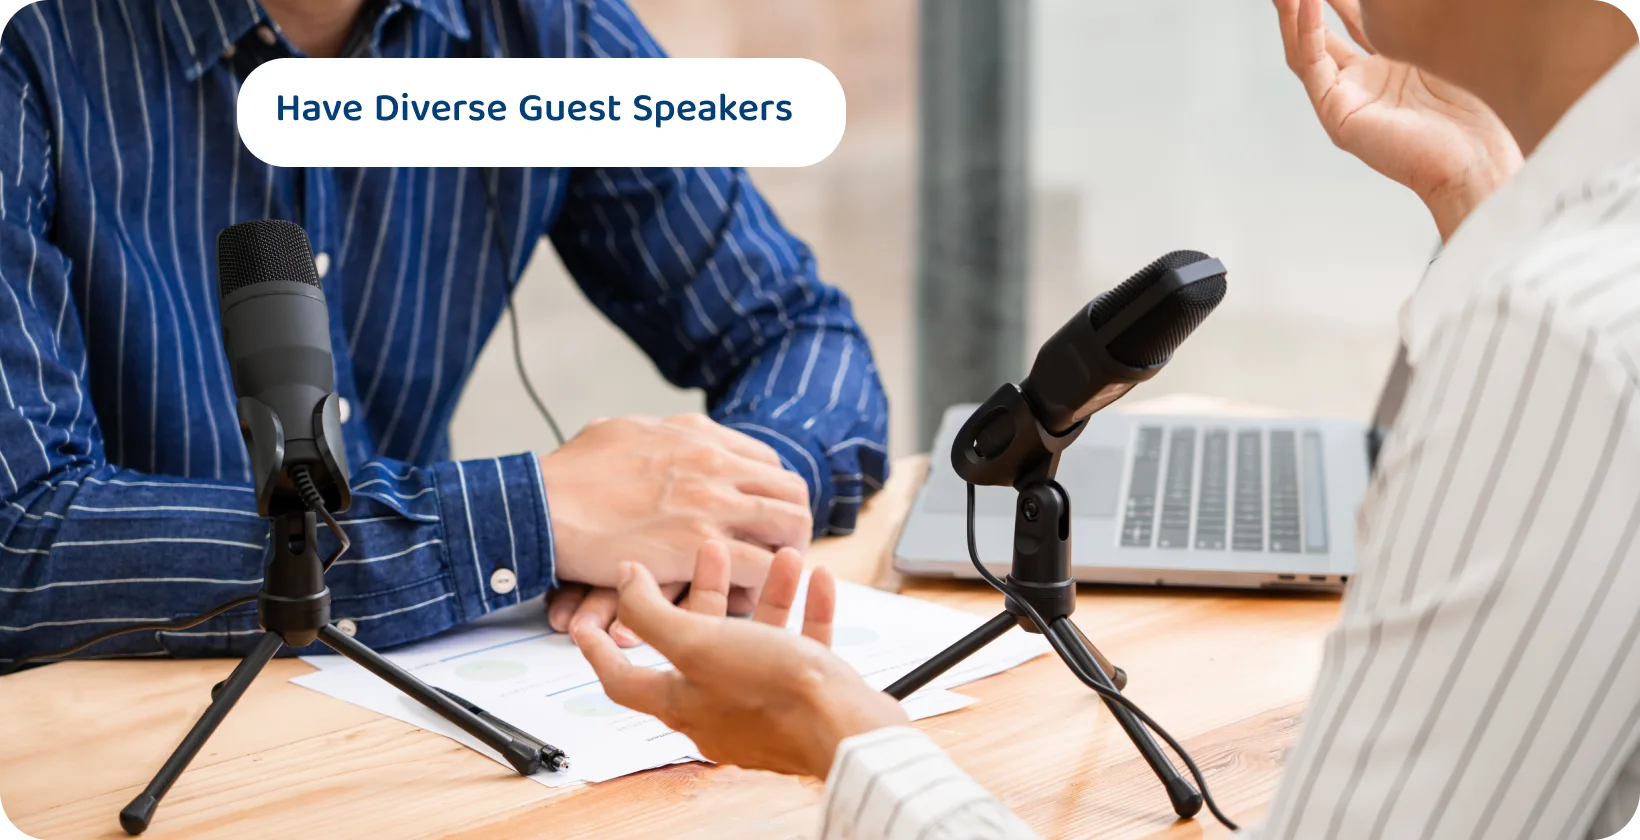 Doi podcasteri cu microfoane care discută pot fi sfaturile de conținut pentru sesiuni de vorbitori invitați captivante și diverse.